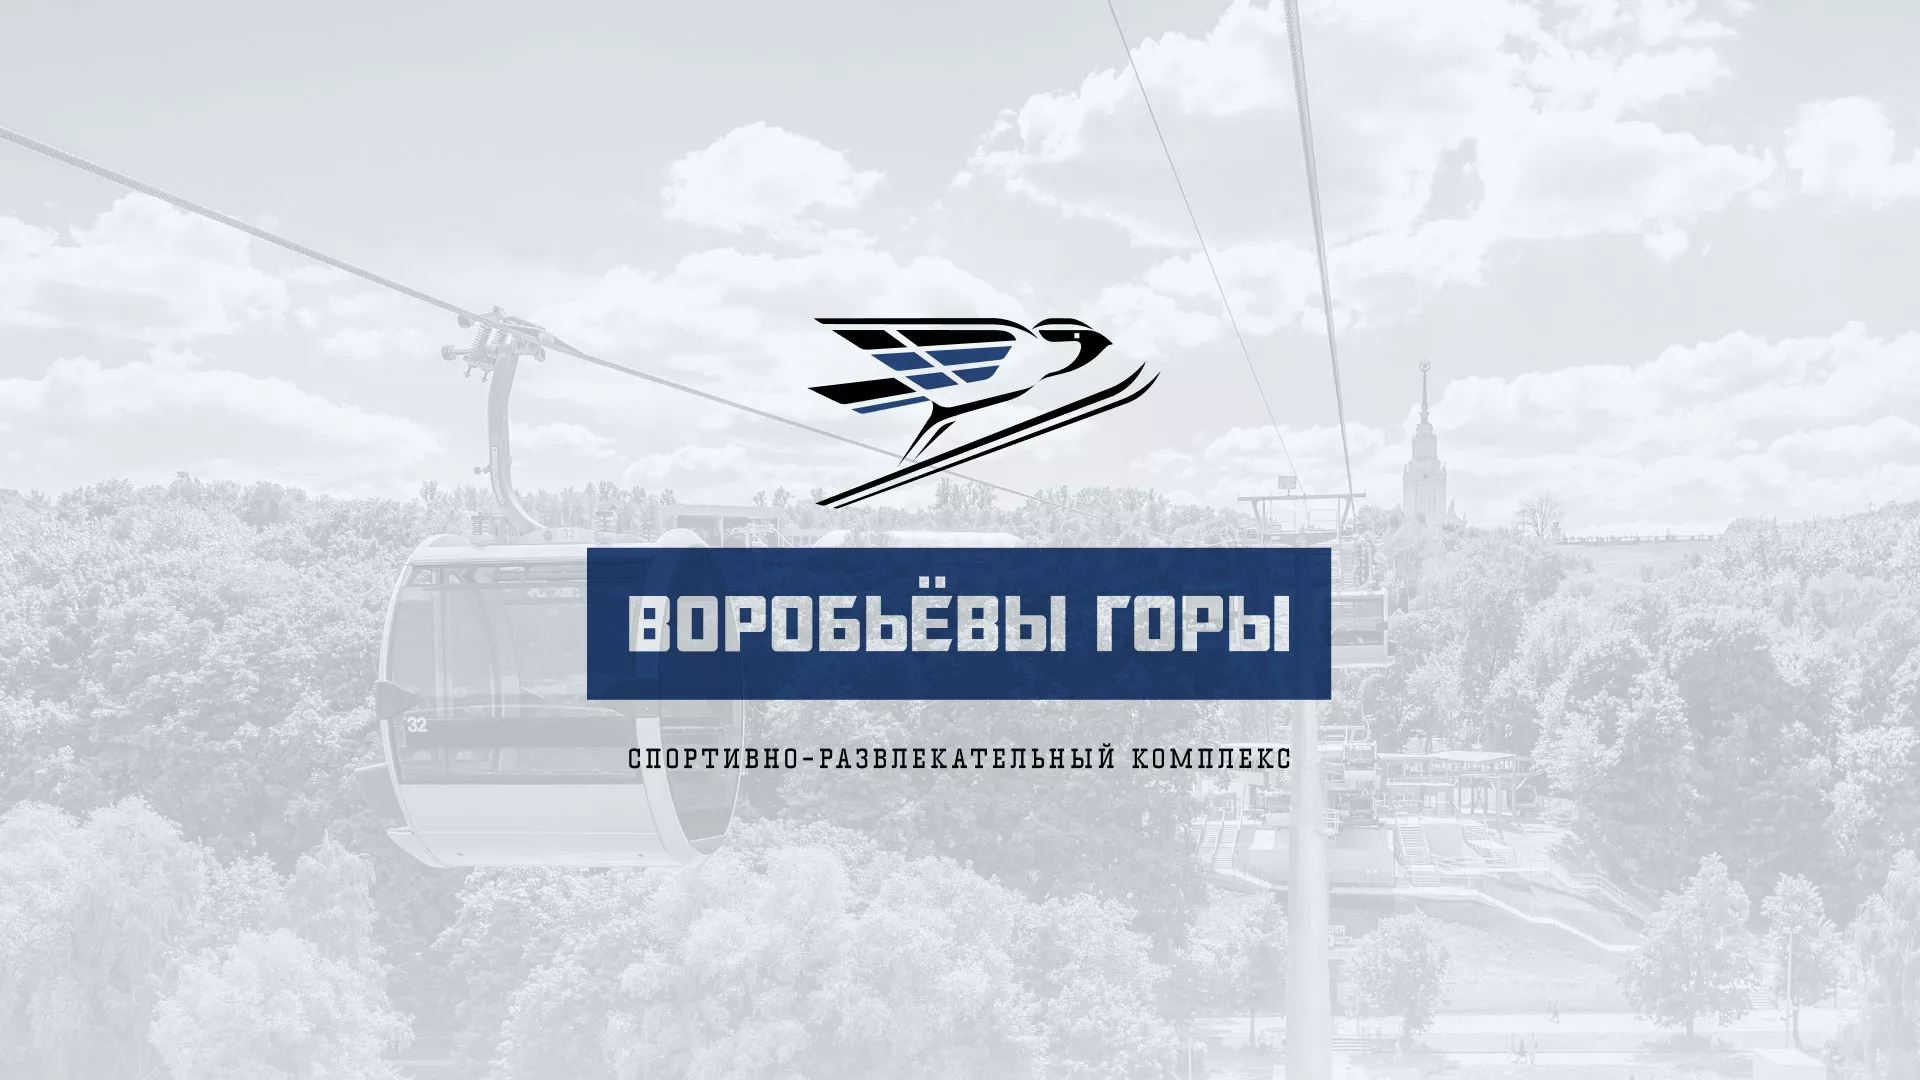 Разработка сайта в Симферополе для спортивно-развлекательного комплекса «Воробьёвы горы»